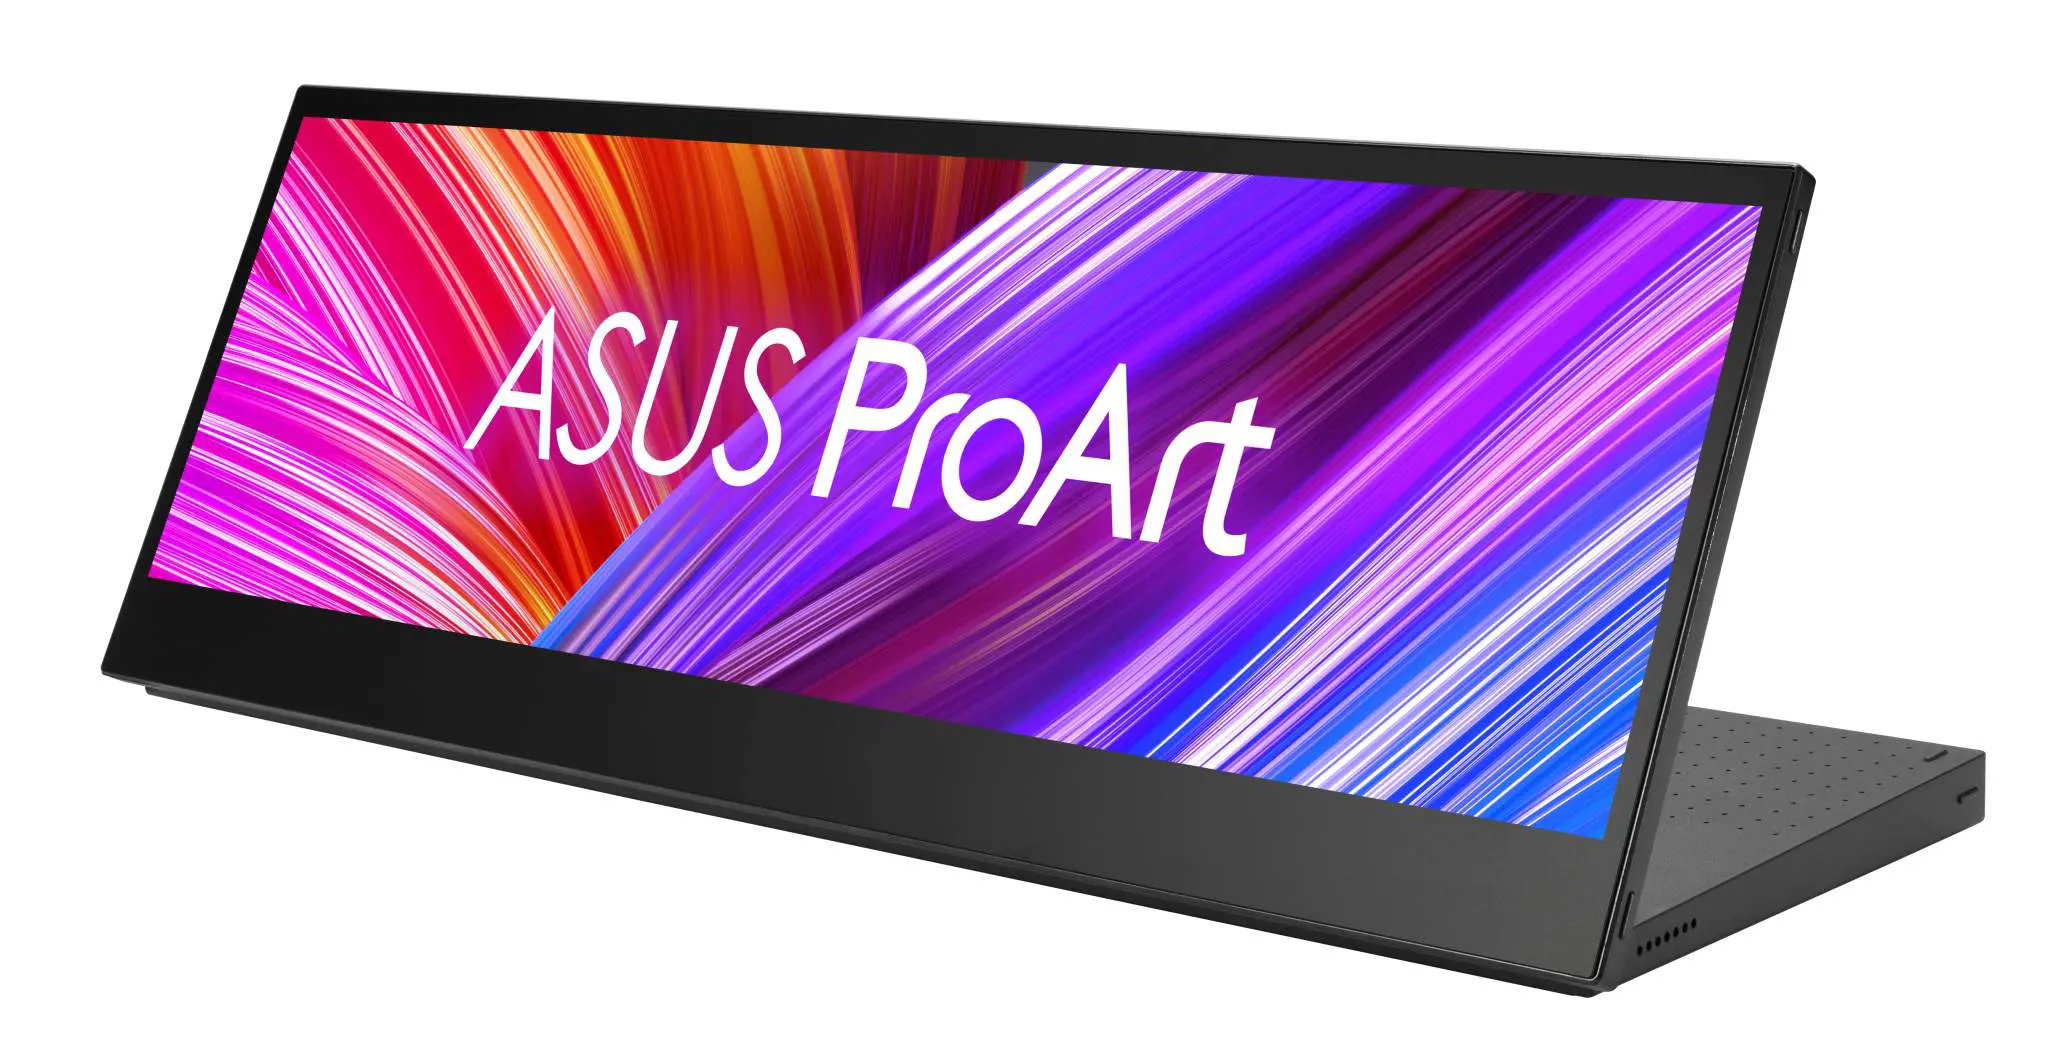 ASUS ra mắt loạt màn hình ProArt mới: màn hình di động tỉ lệ dị, màn hình OLED tự cân màu